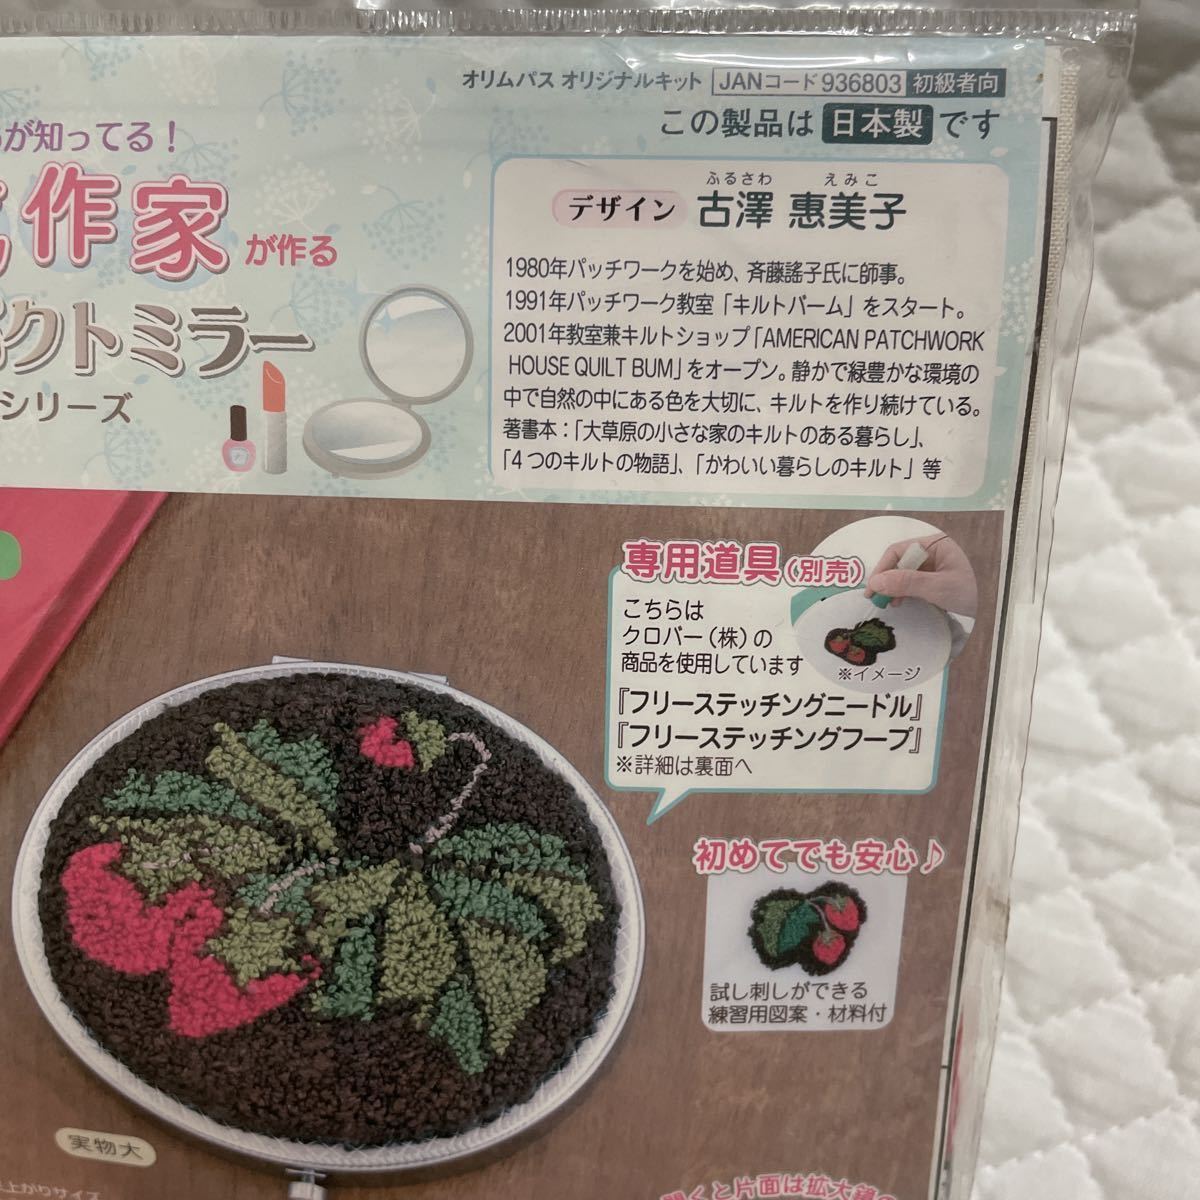 新品 1600円 古澤惠美子 コンパクトミラー キット いちご 未使用 日本製 ハンドメイド 手作り 作品 趣味